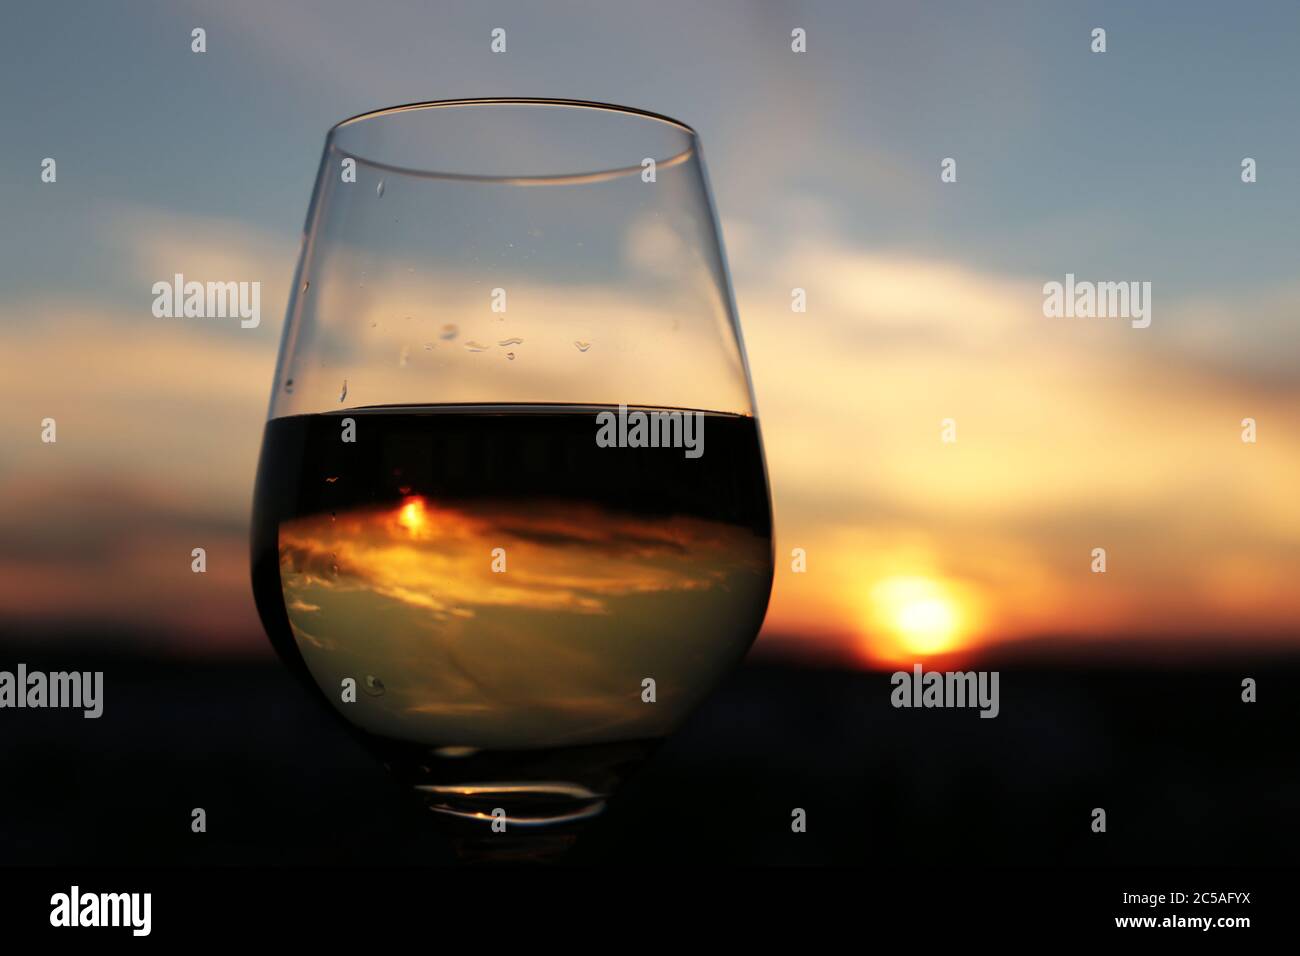 Glas mit weißen Wein auf den schönen Sonnenuntergang Hintergrund, Sonne und Himmel sind in Alkohol trinken wider. Konzept der Feier, abends Party im Resort Stockfoto